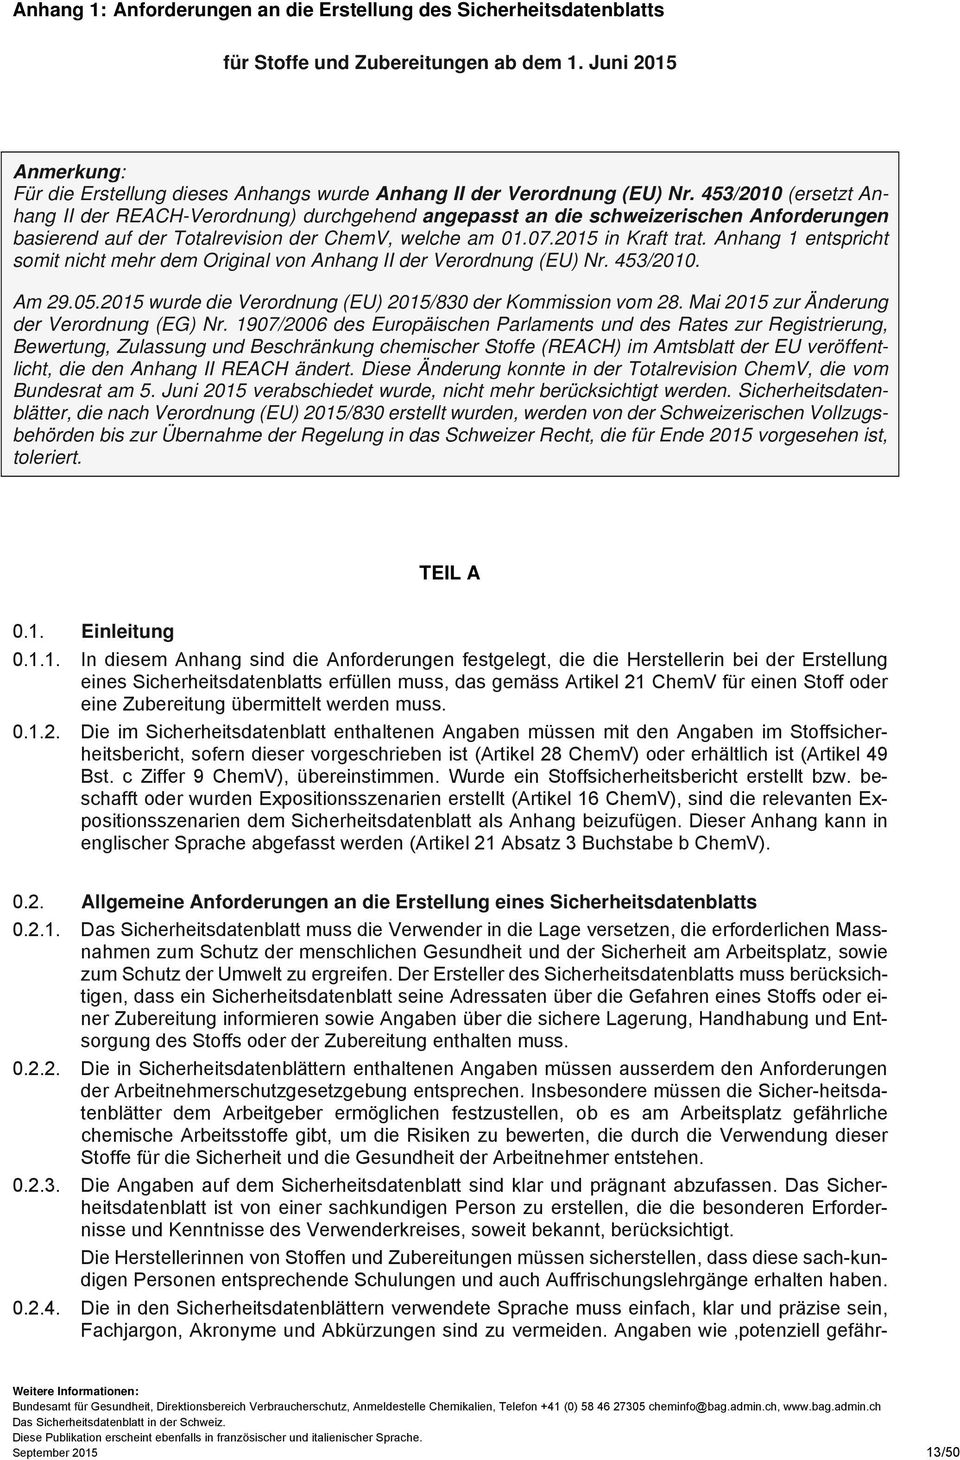 453/2010 (ersetzt Anhang II der REACH-Verordnung) durchgehend angepasst an die schweizerischen Anforderungen basierend auf der Totalrevision der ChemV, welche am 01.07.2015 in Kraft trat.